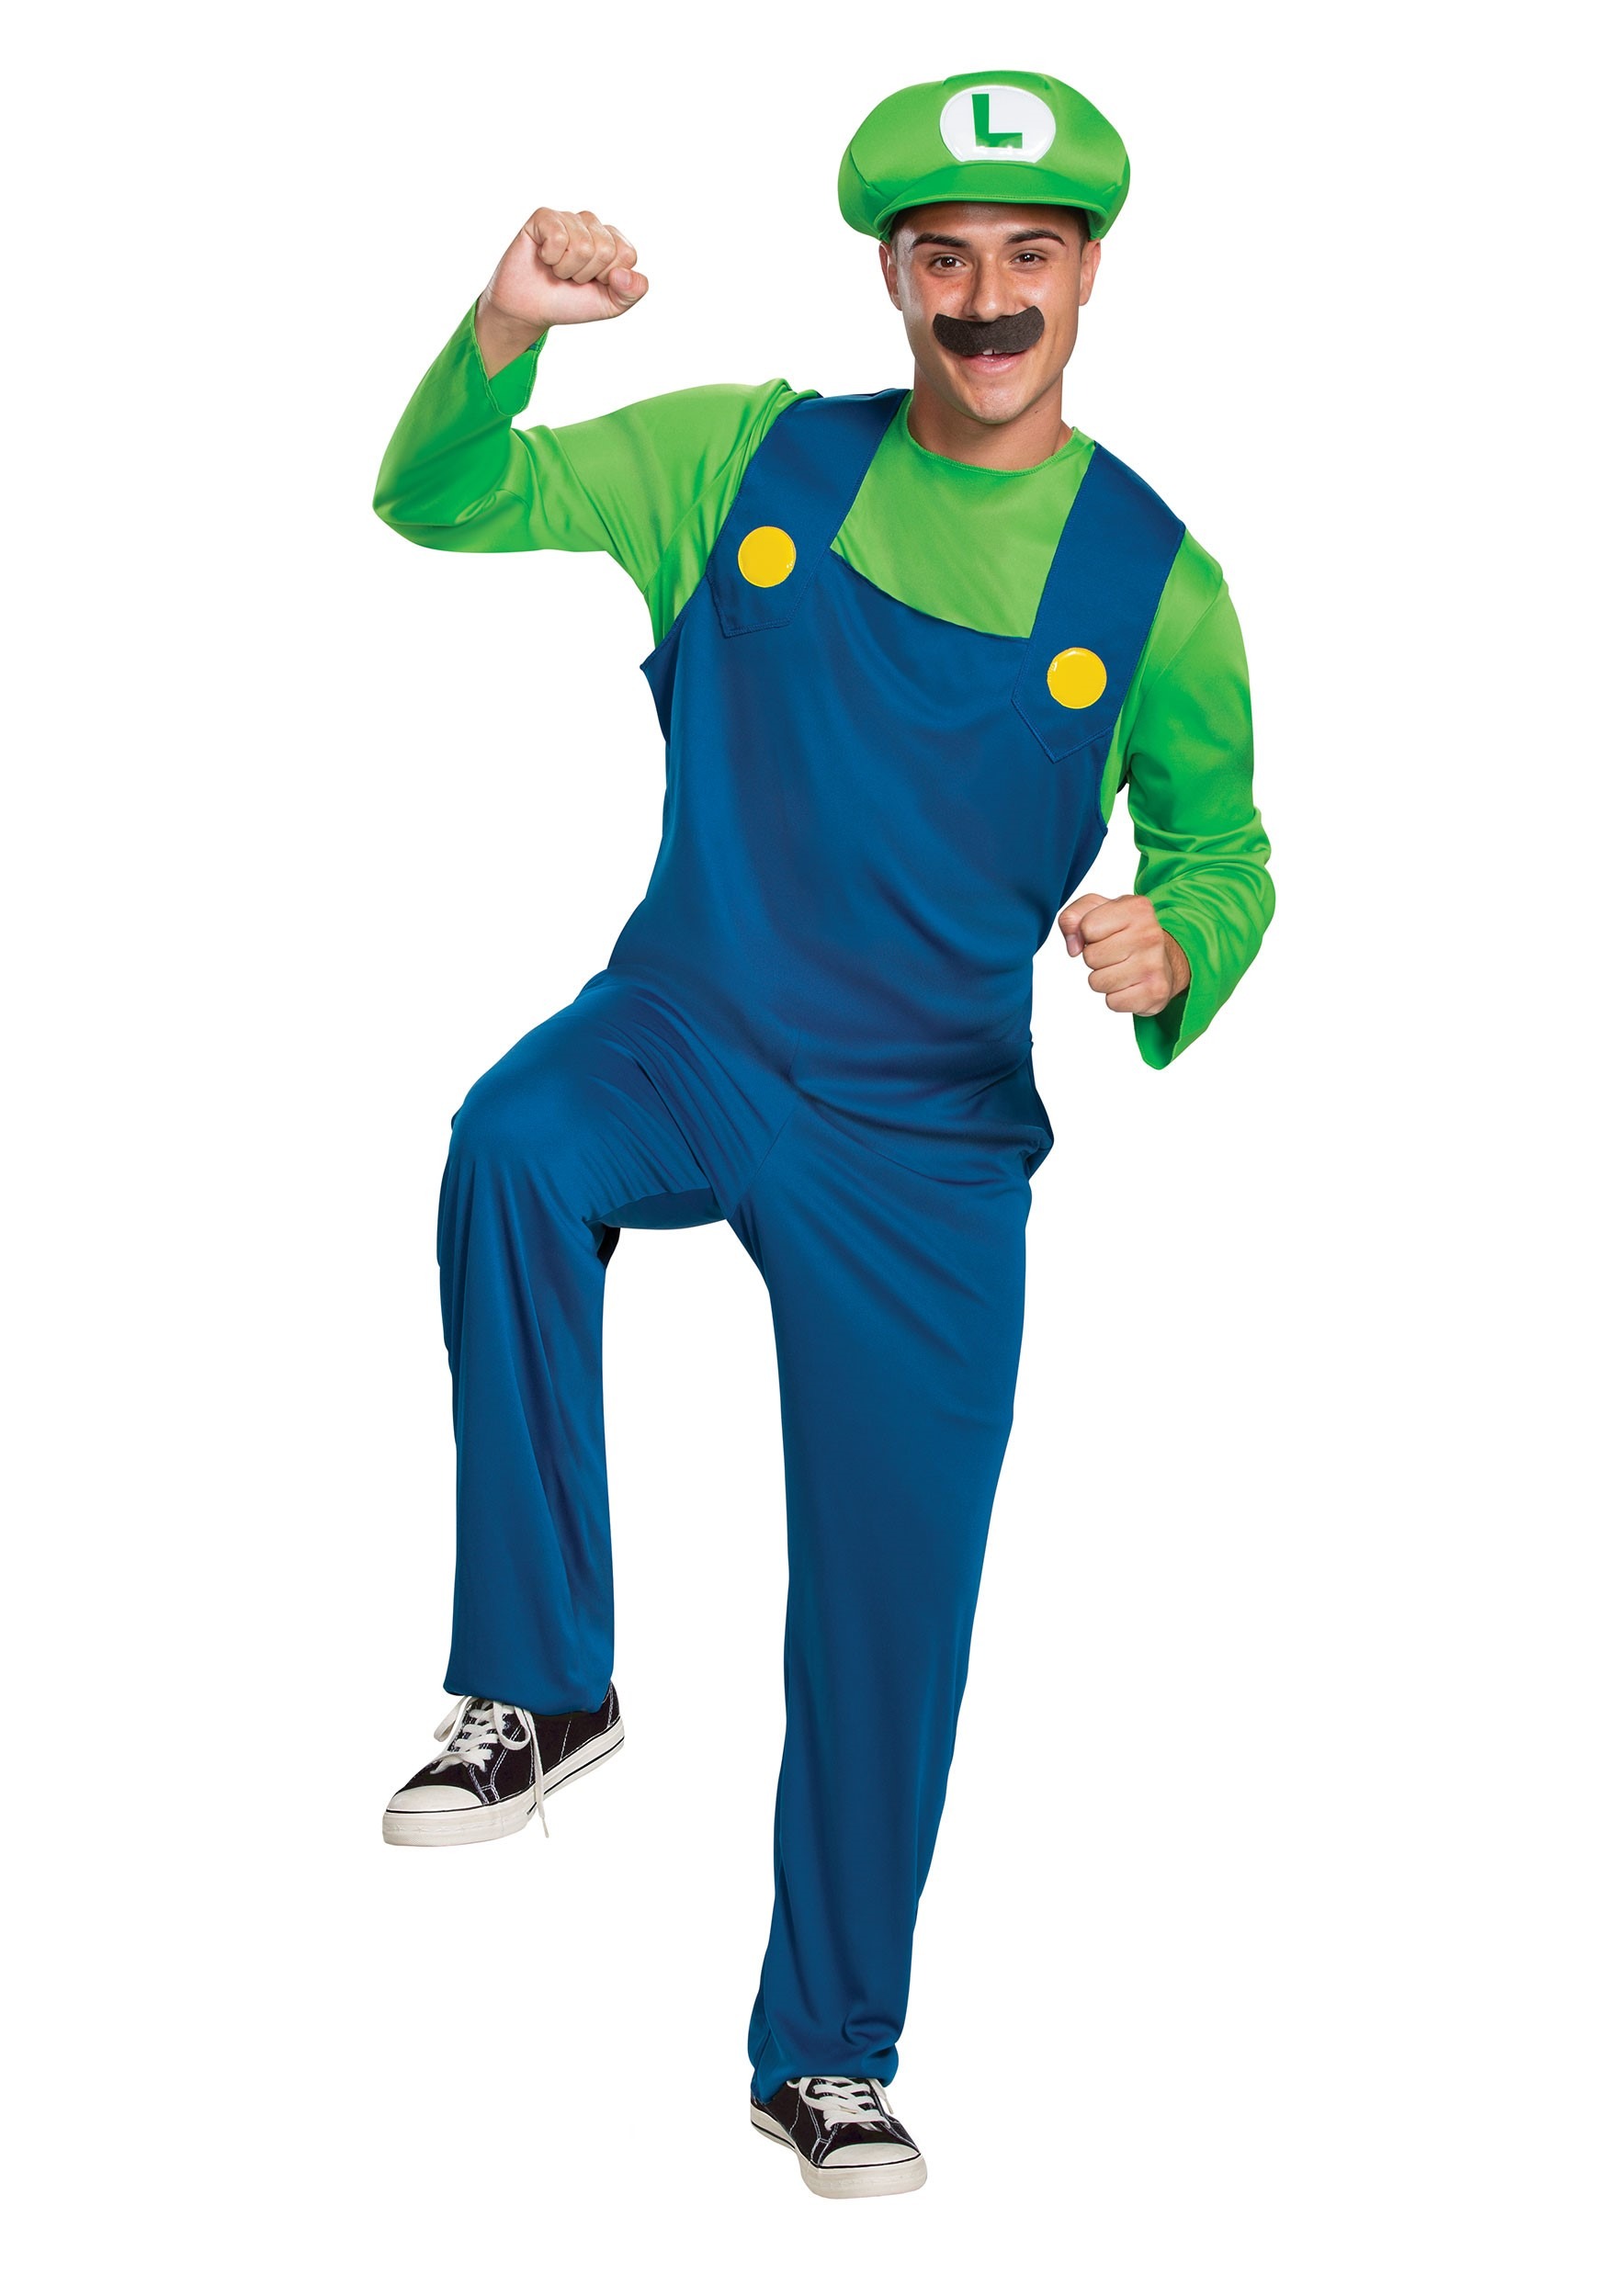 Must Have Classic Adult Super Mario Luigi Costume From Disguise Fandom Shop - super mario luigi pants roblox